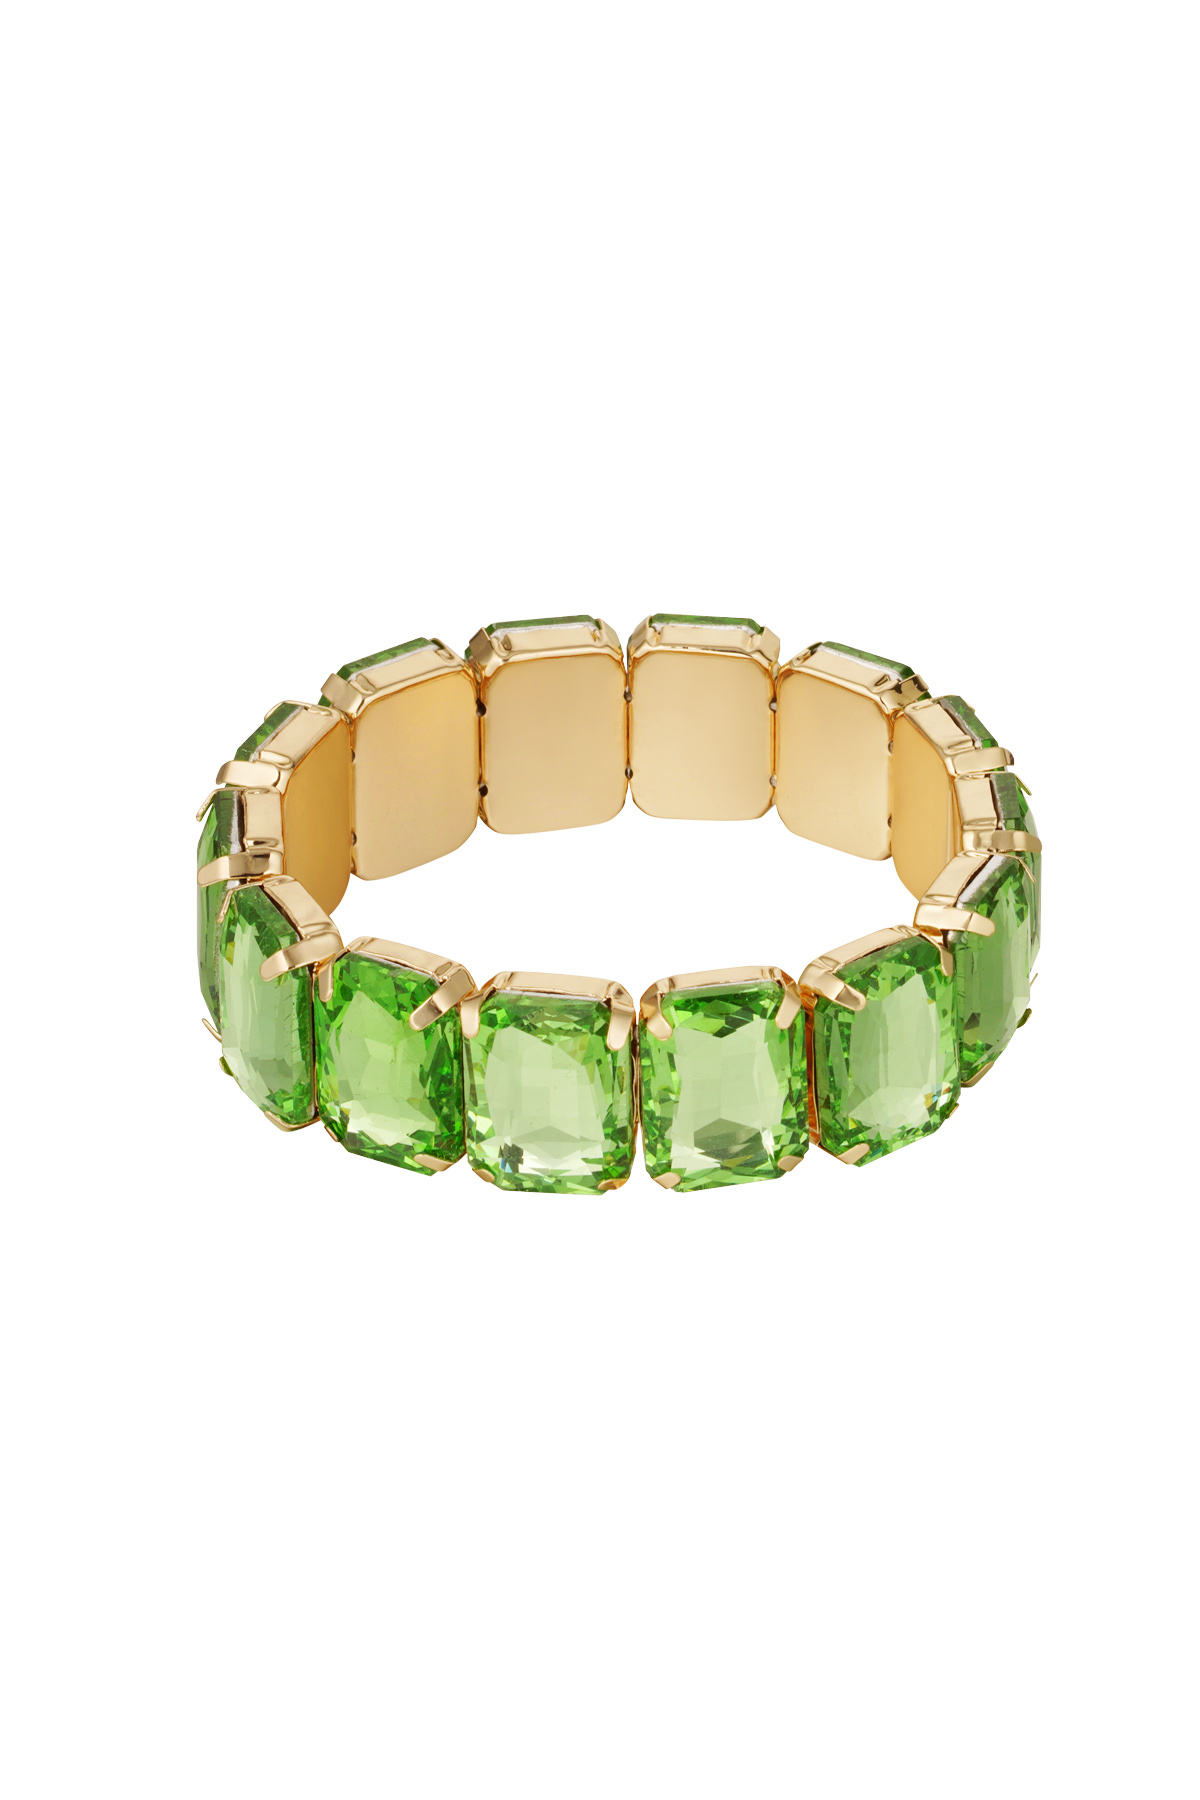 Slave bracelet large stones - gold/green